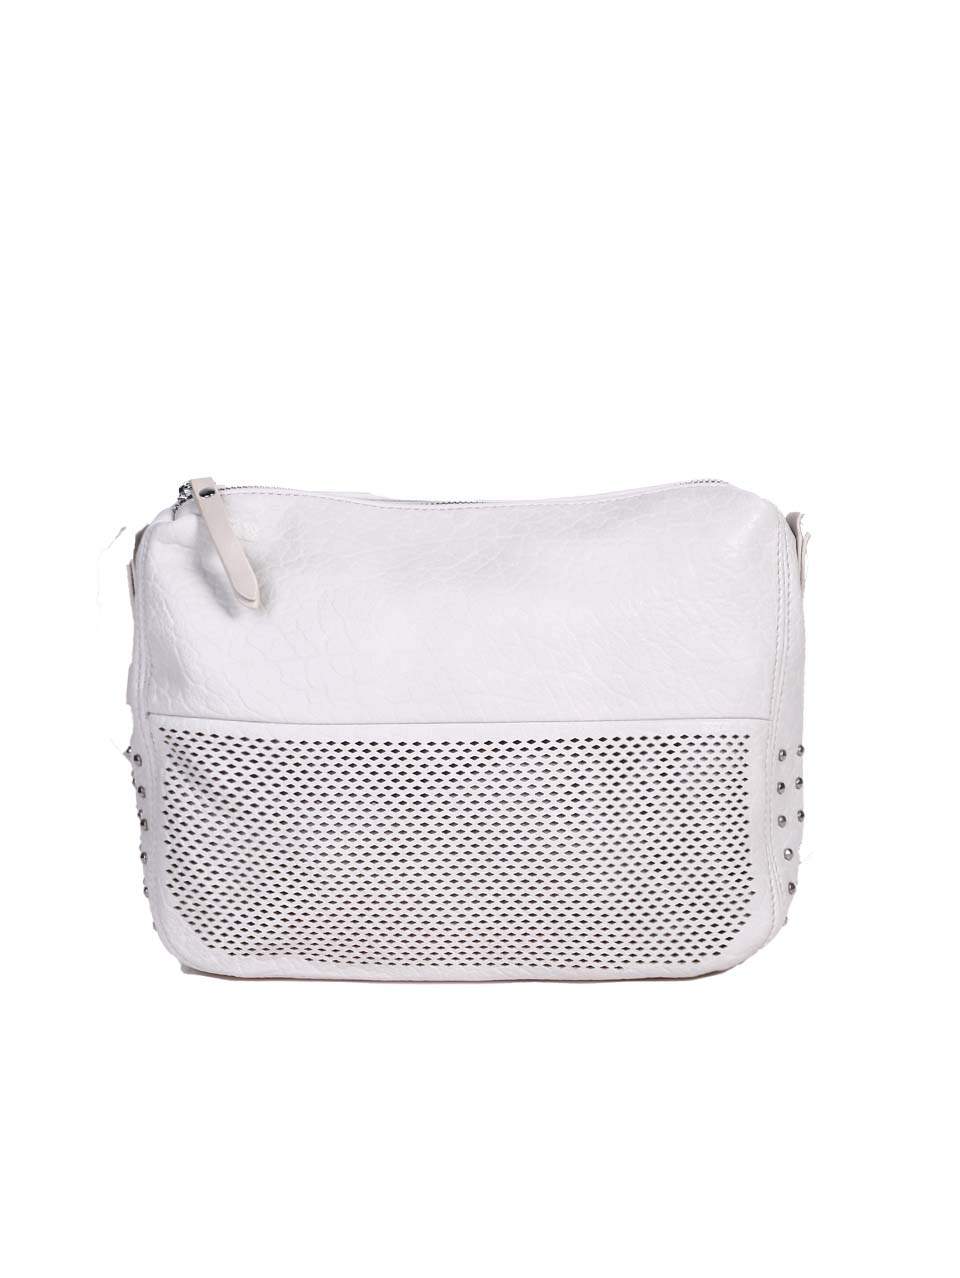 Ежедневна дамска чанта в бял/сив цвят 9Q-24291 off white